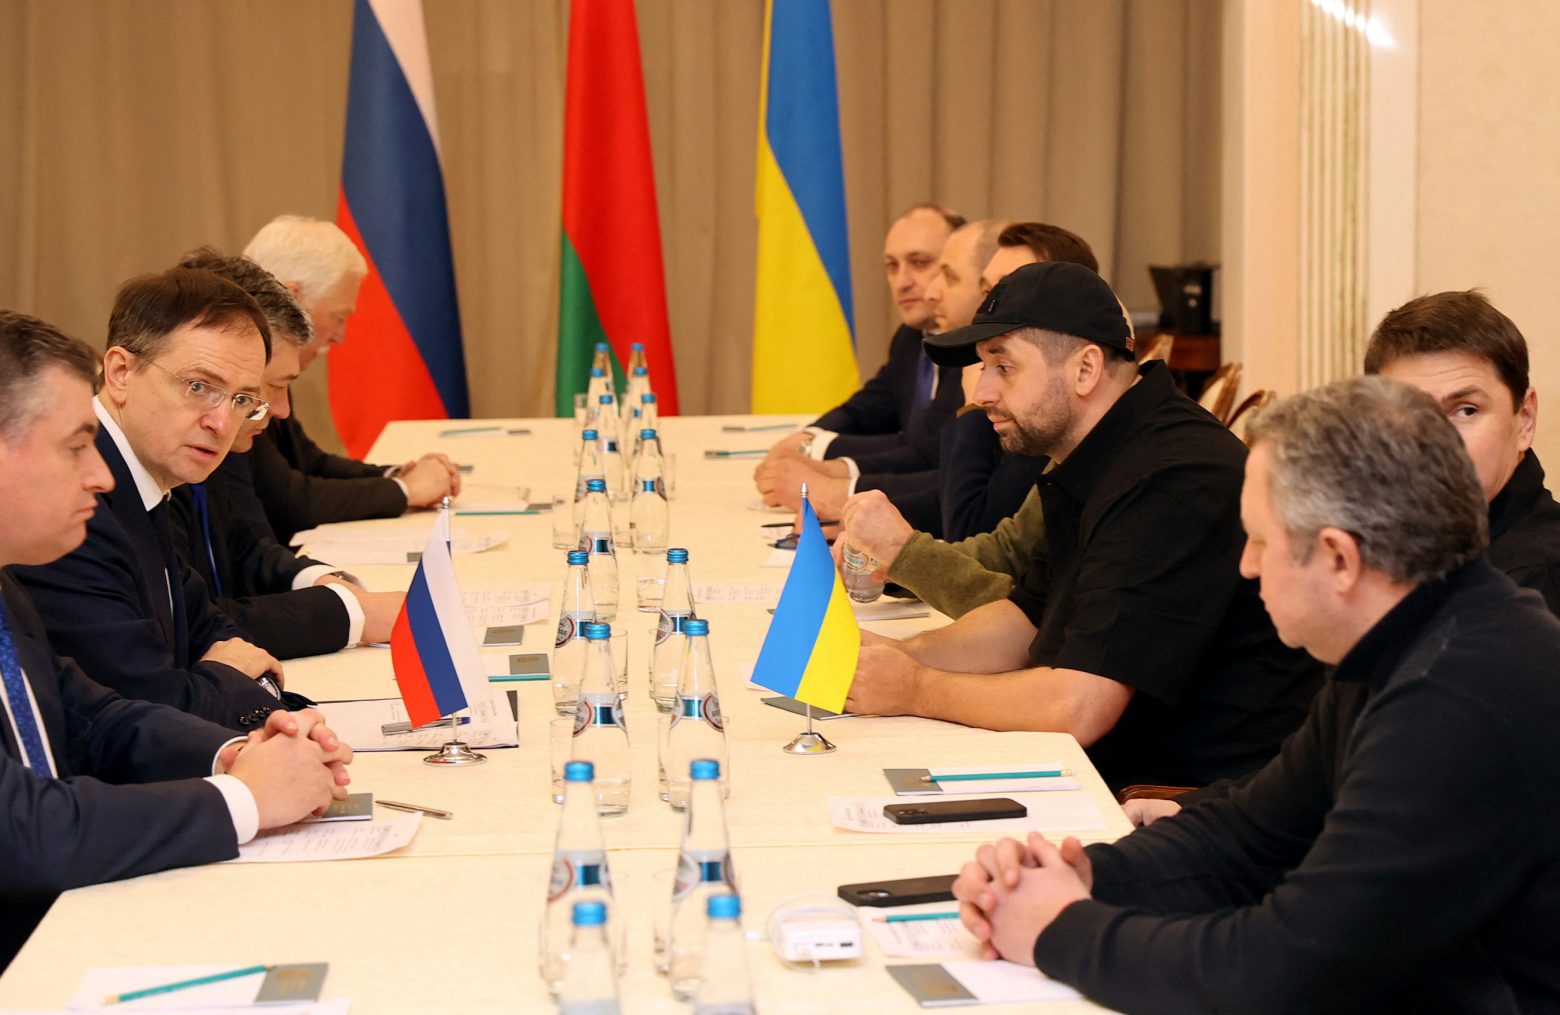 Ολοκληρώθηκαν οι διαπραγματεύσεις του Κιέβου με τη Μόσχα – Στις πατρίδες τους για διαβουλεύσεις οι αντιπροσωπείες